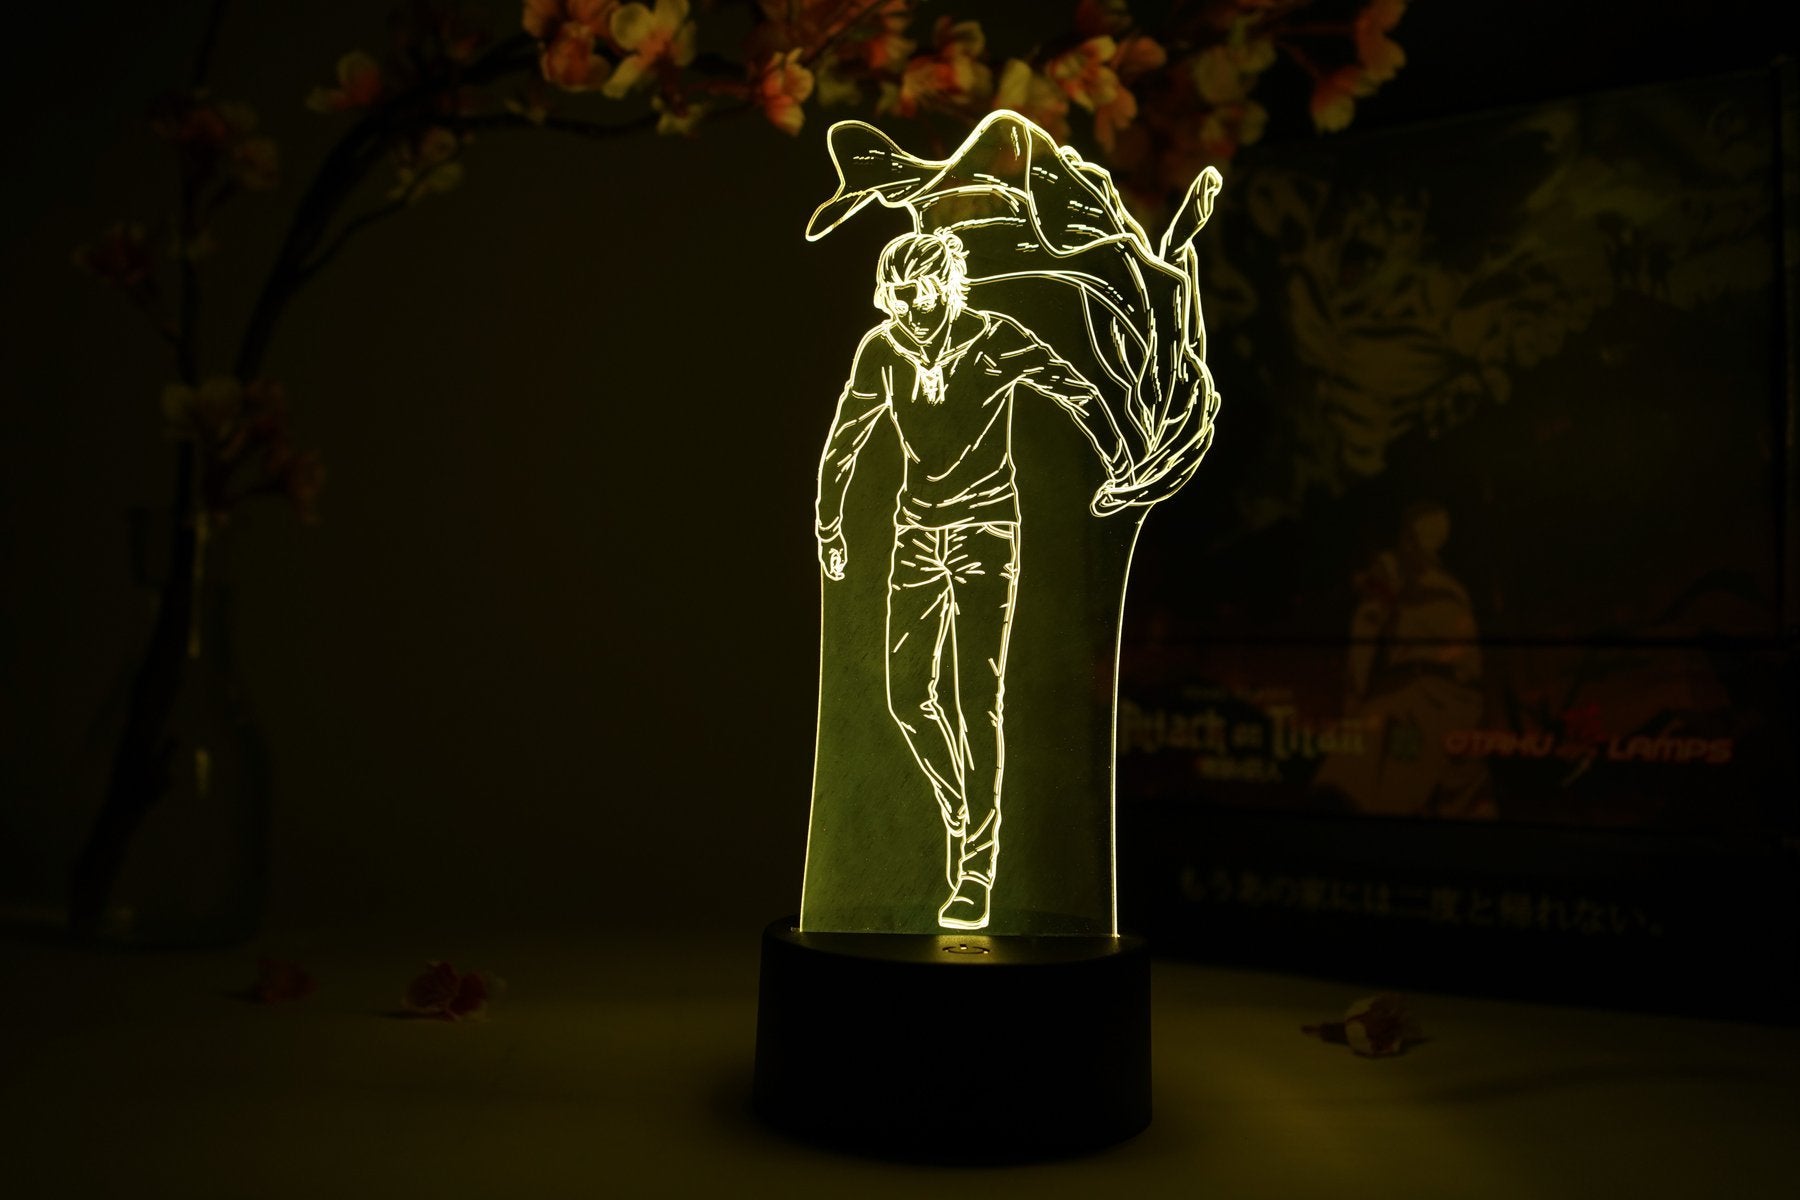 Attack on Titan - Eren Yeager Final Season Otaku Lamp image count 7